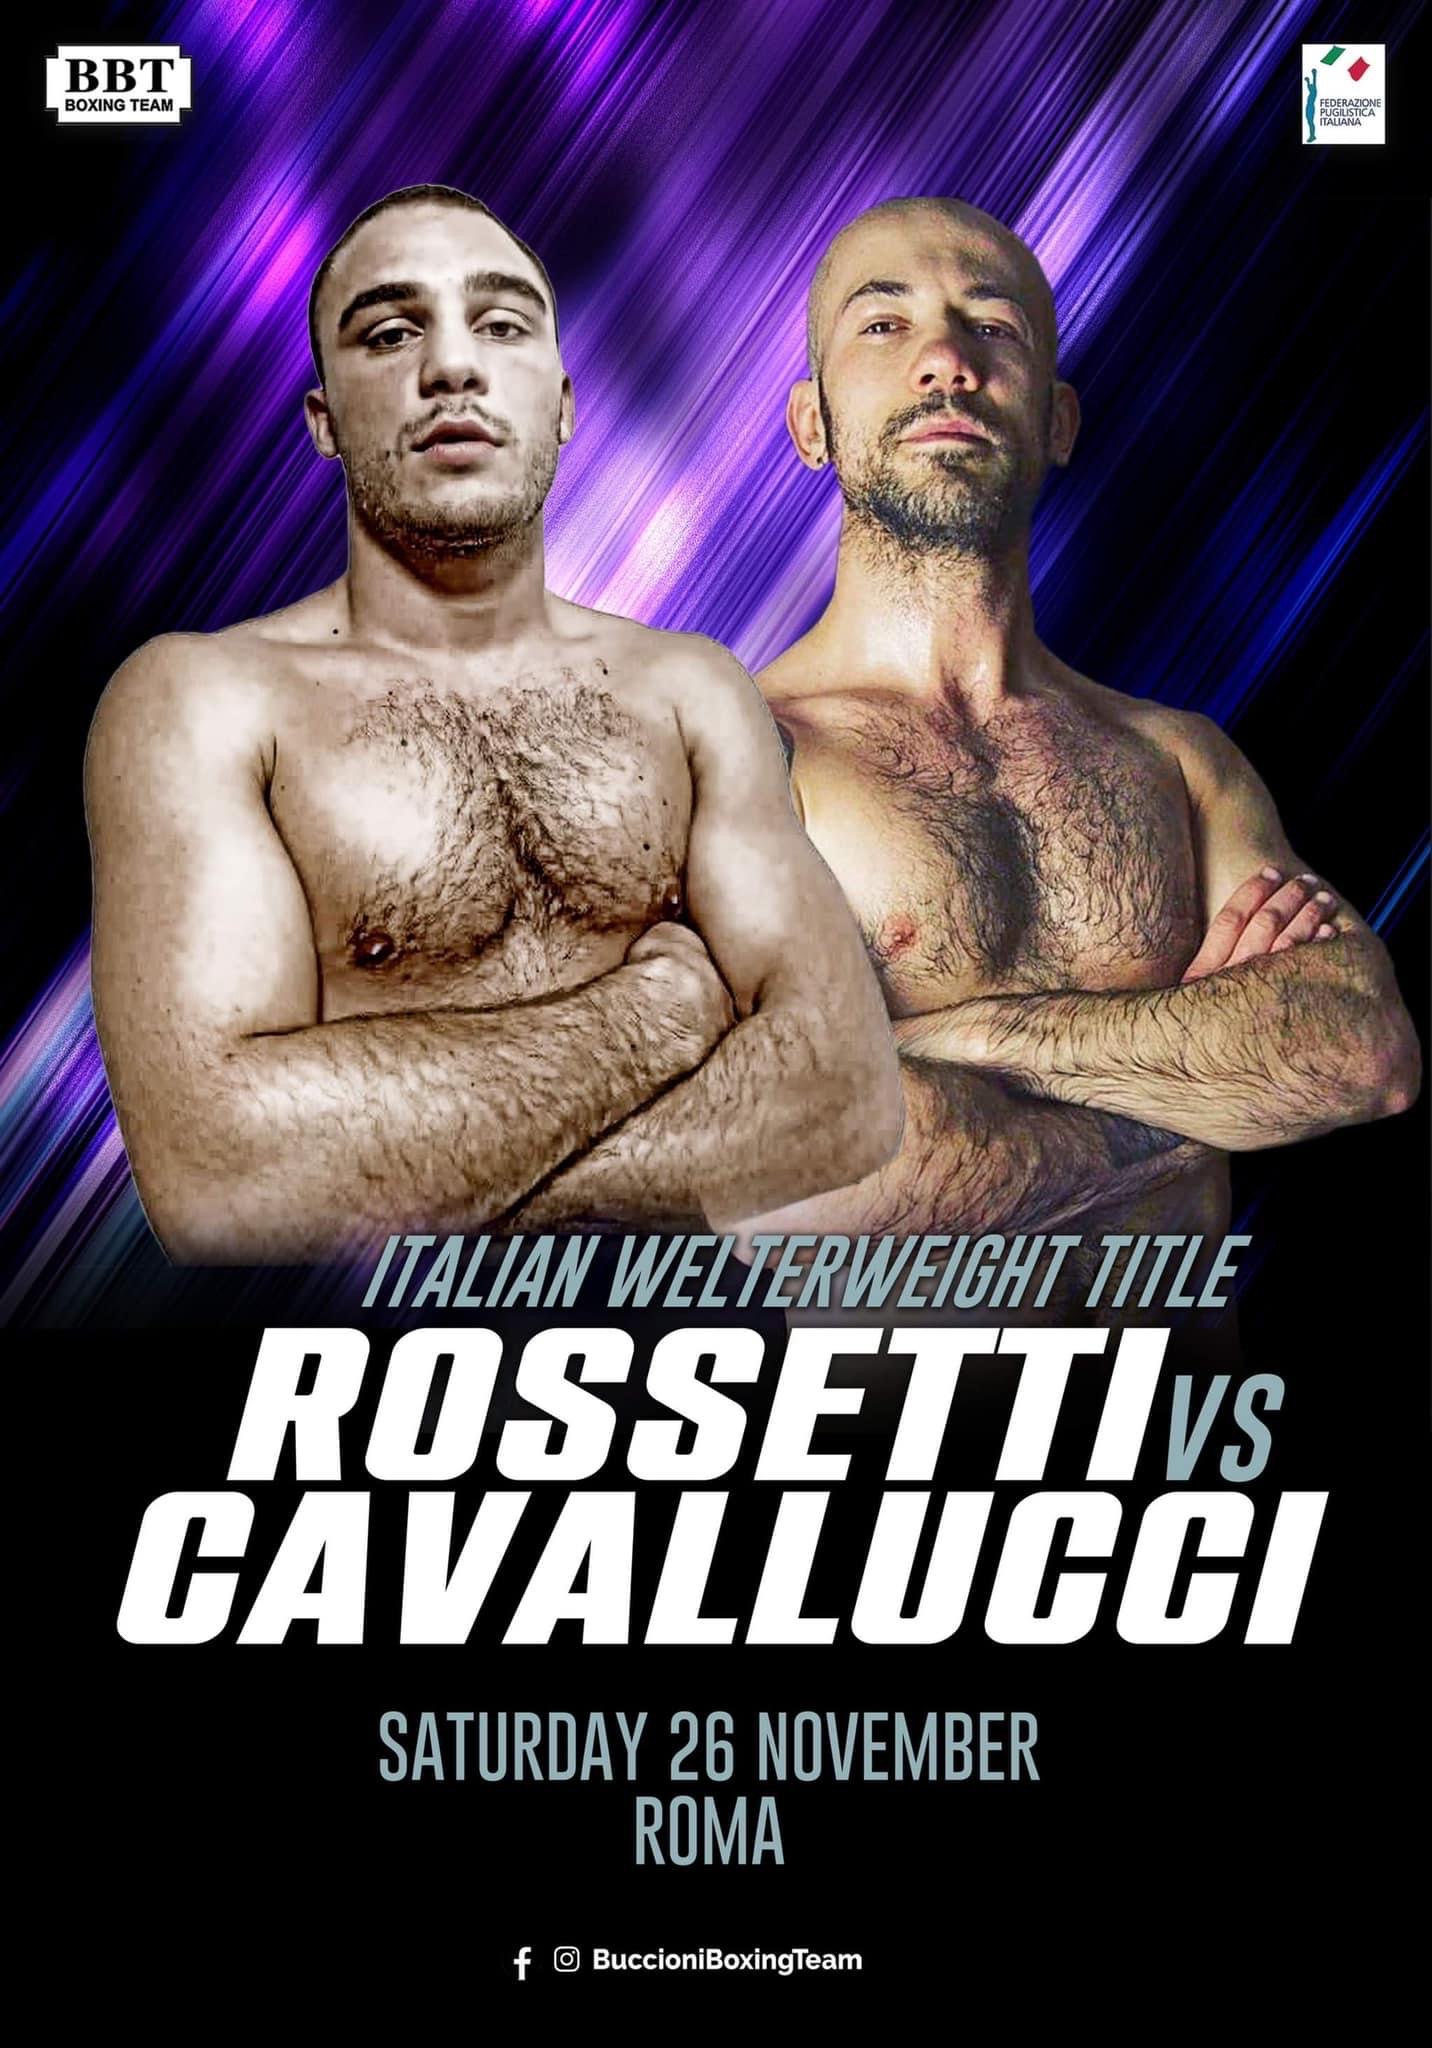 A Roma il 26 novembre la sfida Rossetti vs Cavallucci per l'Italiano Welter 